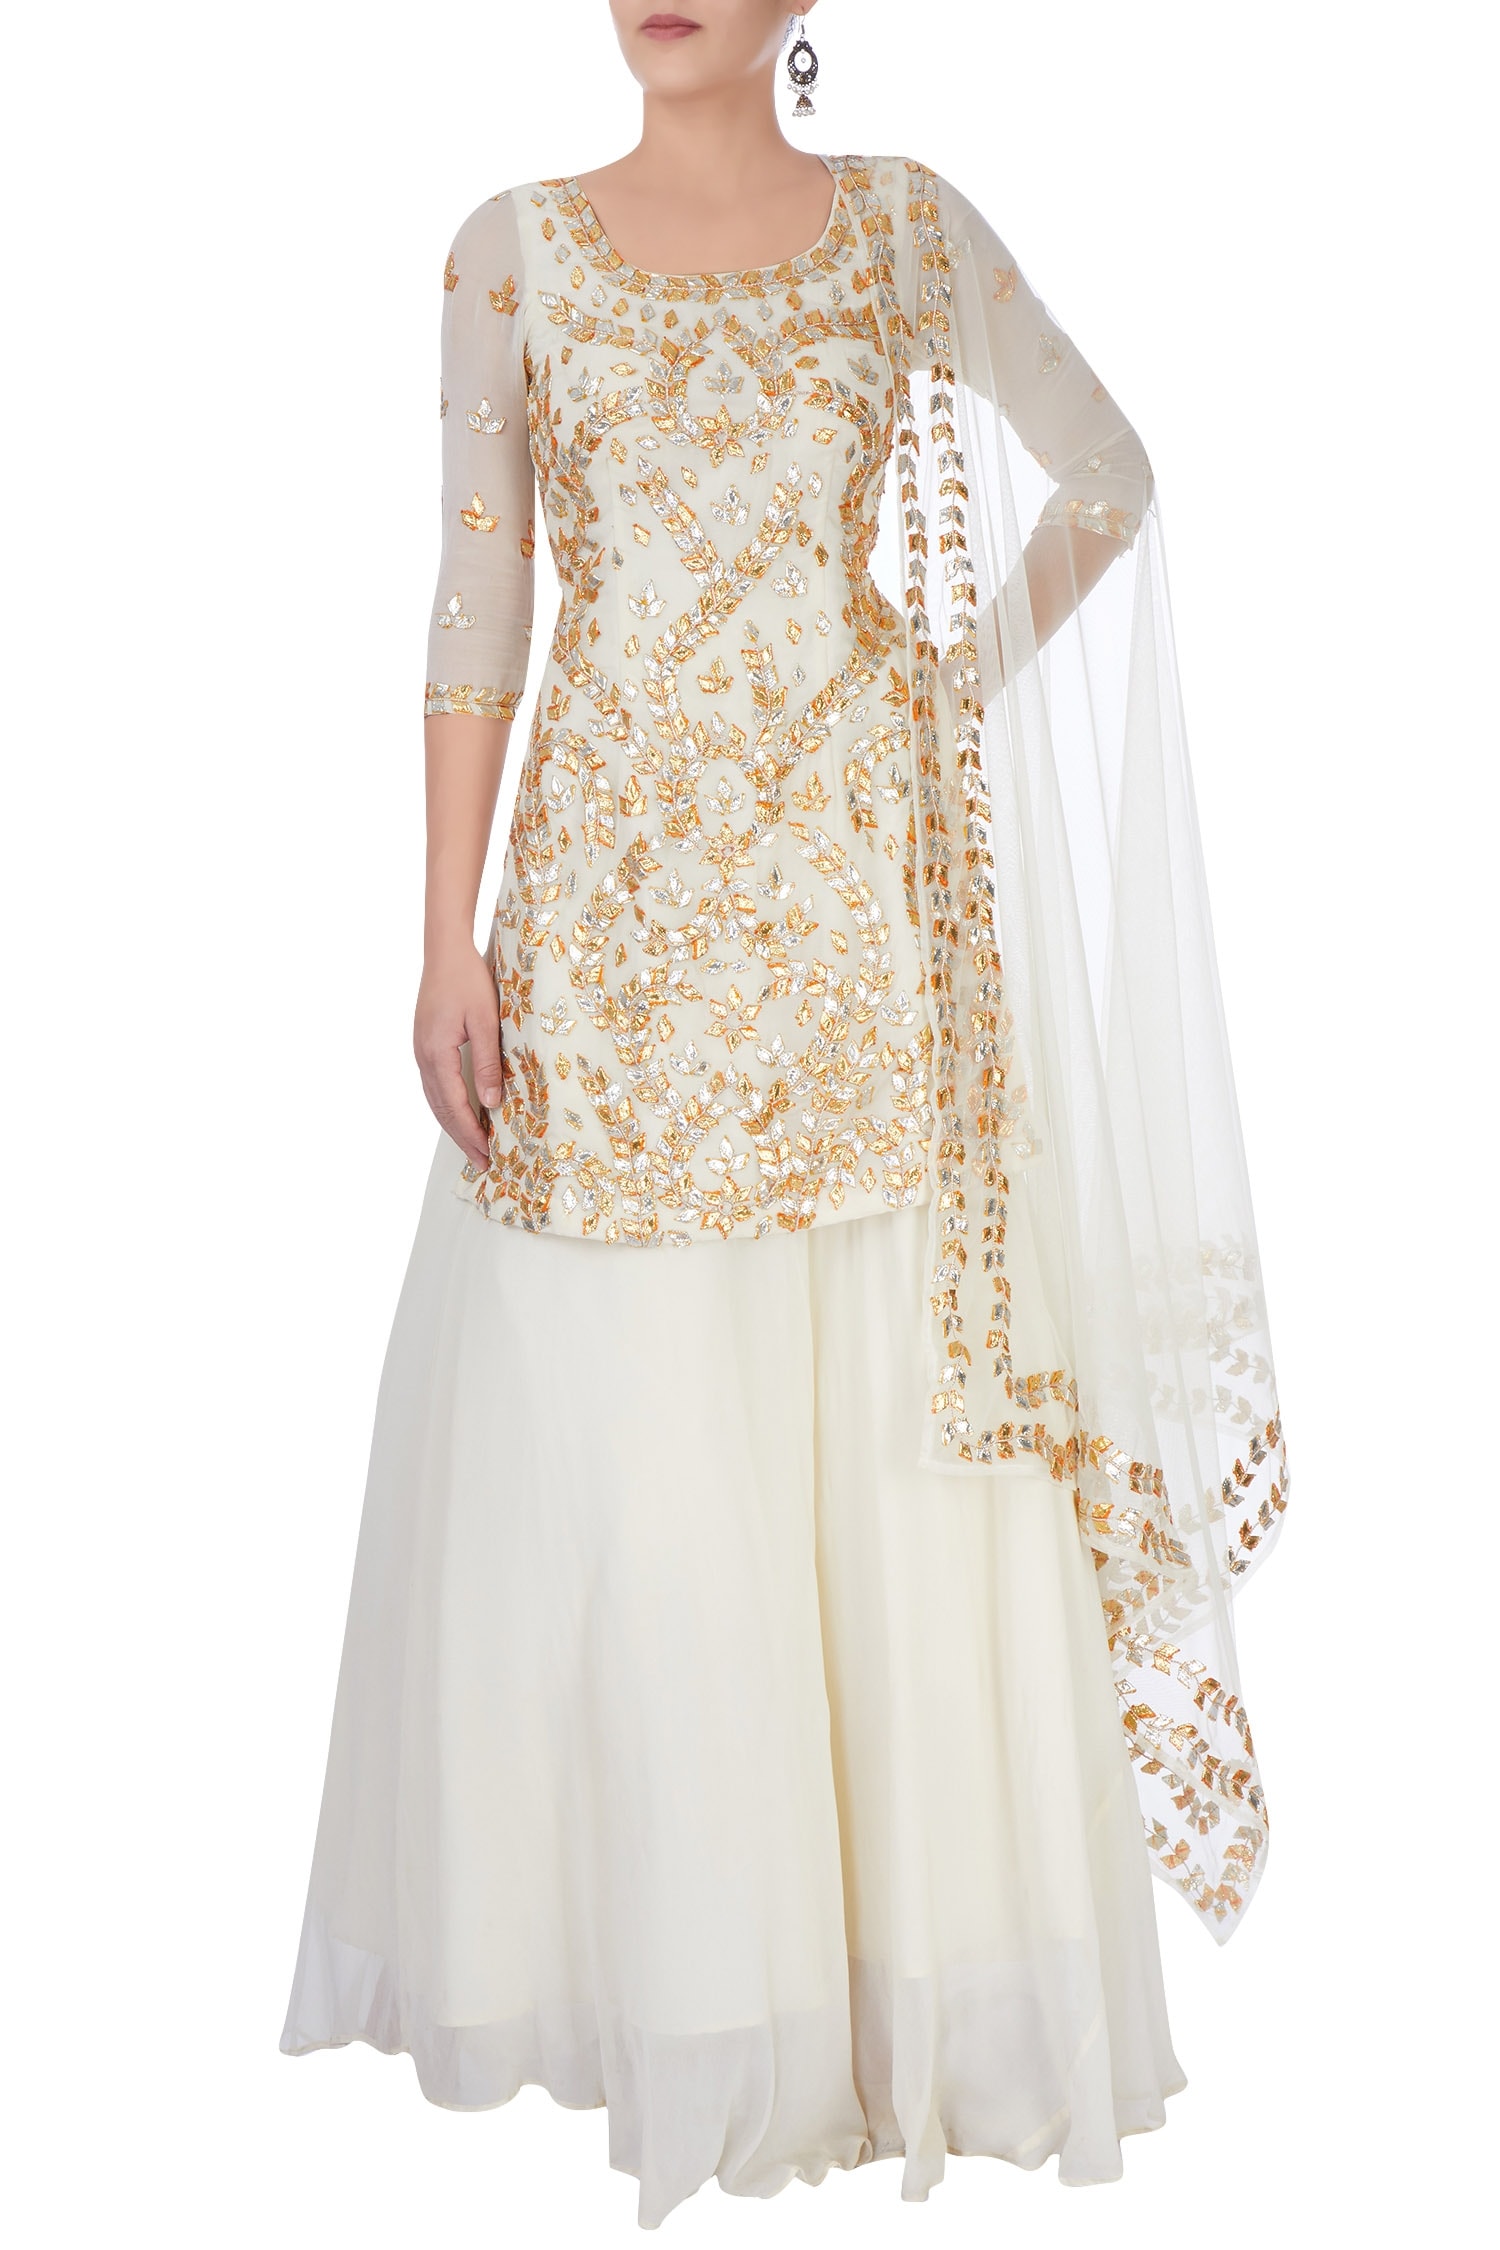 Esha Koul White Off Embellished Backless Lehenga Set For Women